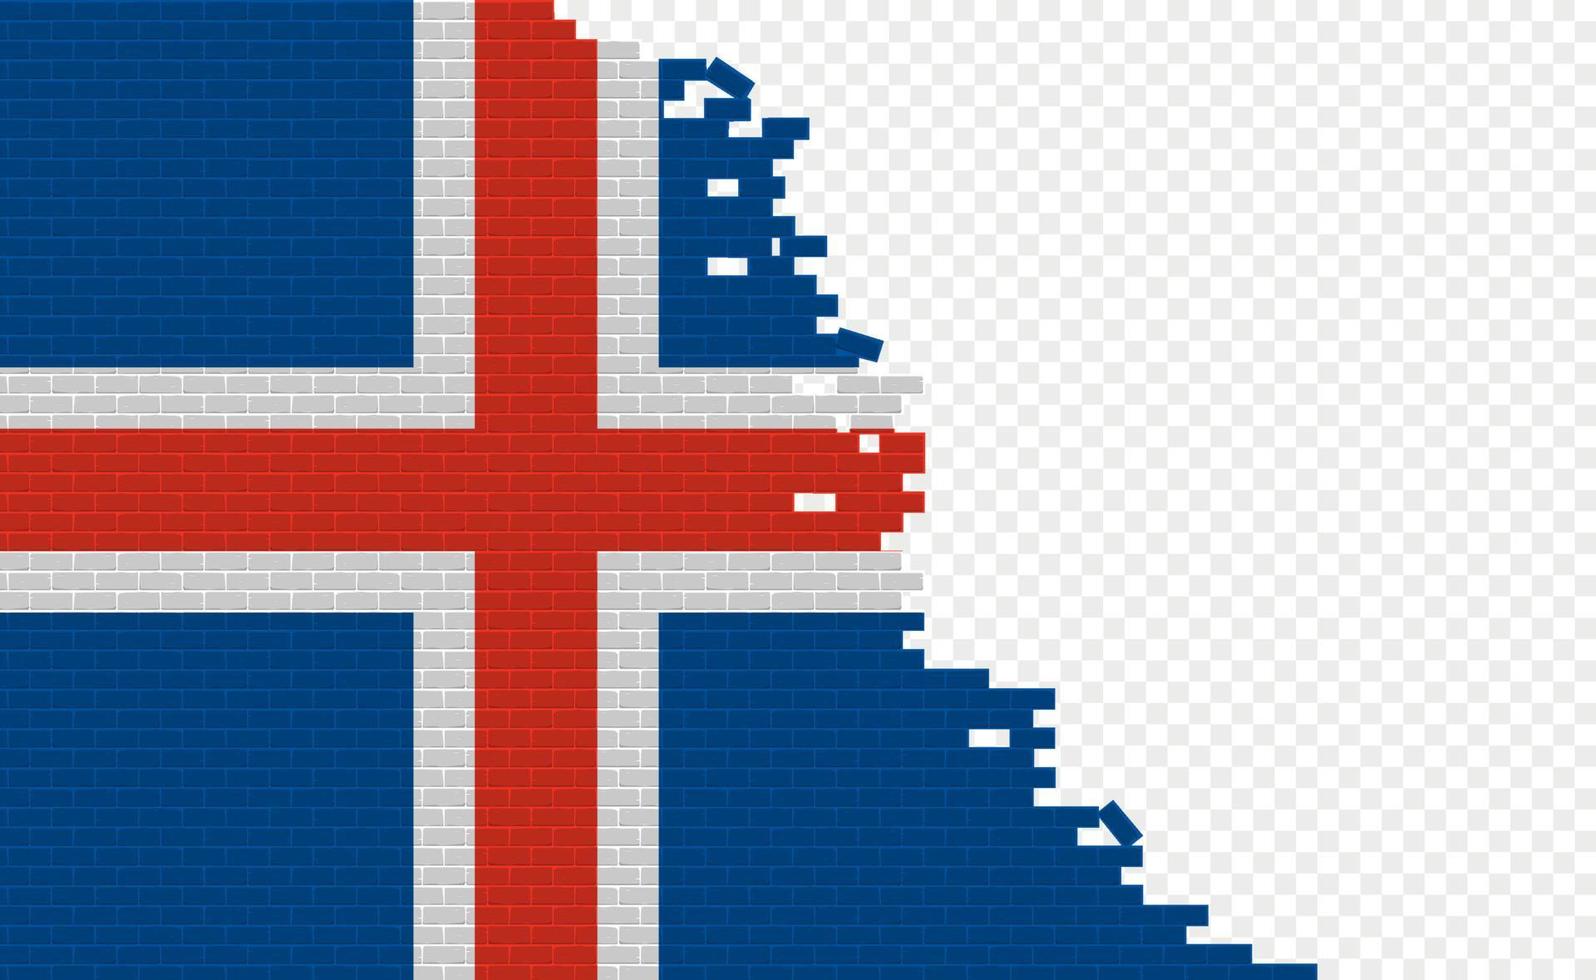 drapeau islandais sur le mur de briques cassées. champ de drapeau vide d'un autre pays. comparaison de pays. édition facile et vecteur en groupes.